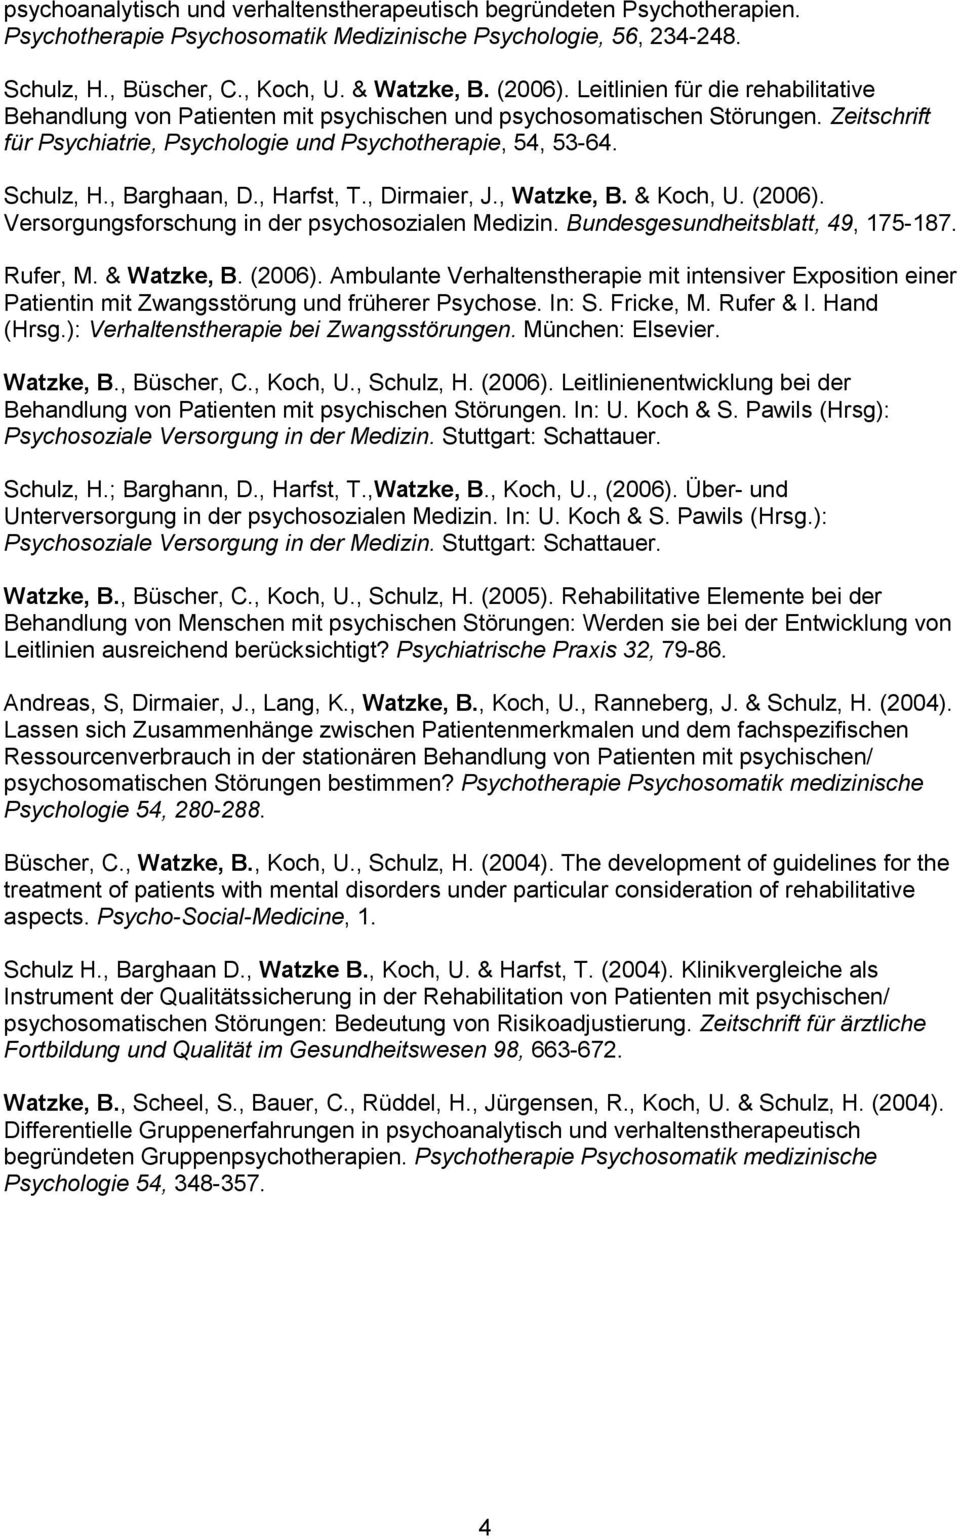 , Barghaan, D., Harfst, T., Dirmaier, J., Watzke, B. & Koch, U. (2006). Versorgungsforschung in der psychosozialen Medizin. Bundesgesundheitsblatt, 49, 175-187. Rufer, M. & Watzke, B. (2006). Ambulante Verhaltenstherapie mit intensiver Exposition einer Patientin mit Zwangsstörung und früherer Psychose.